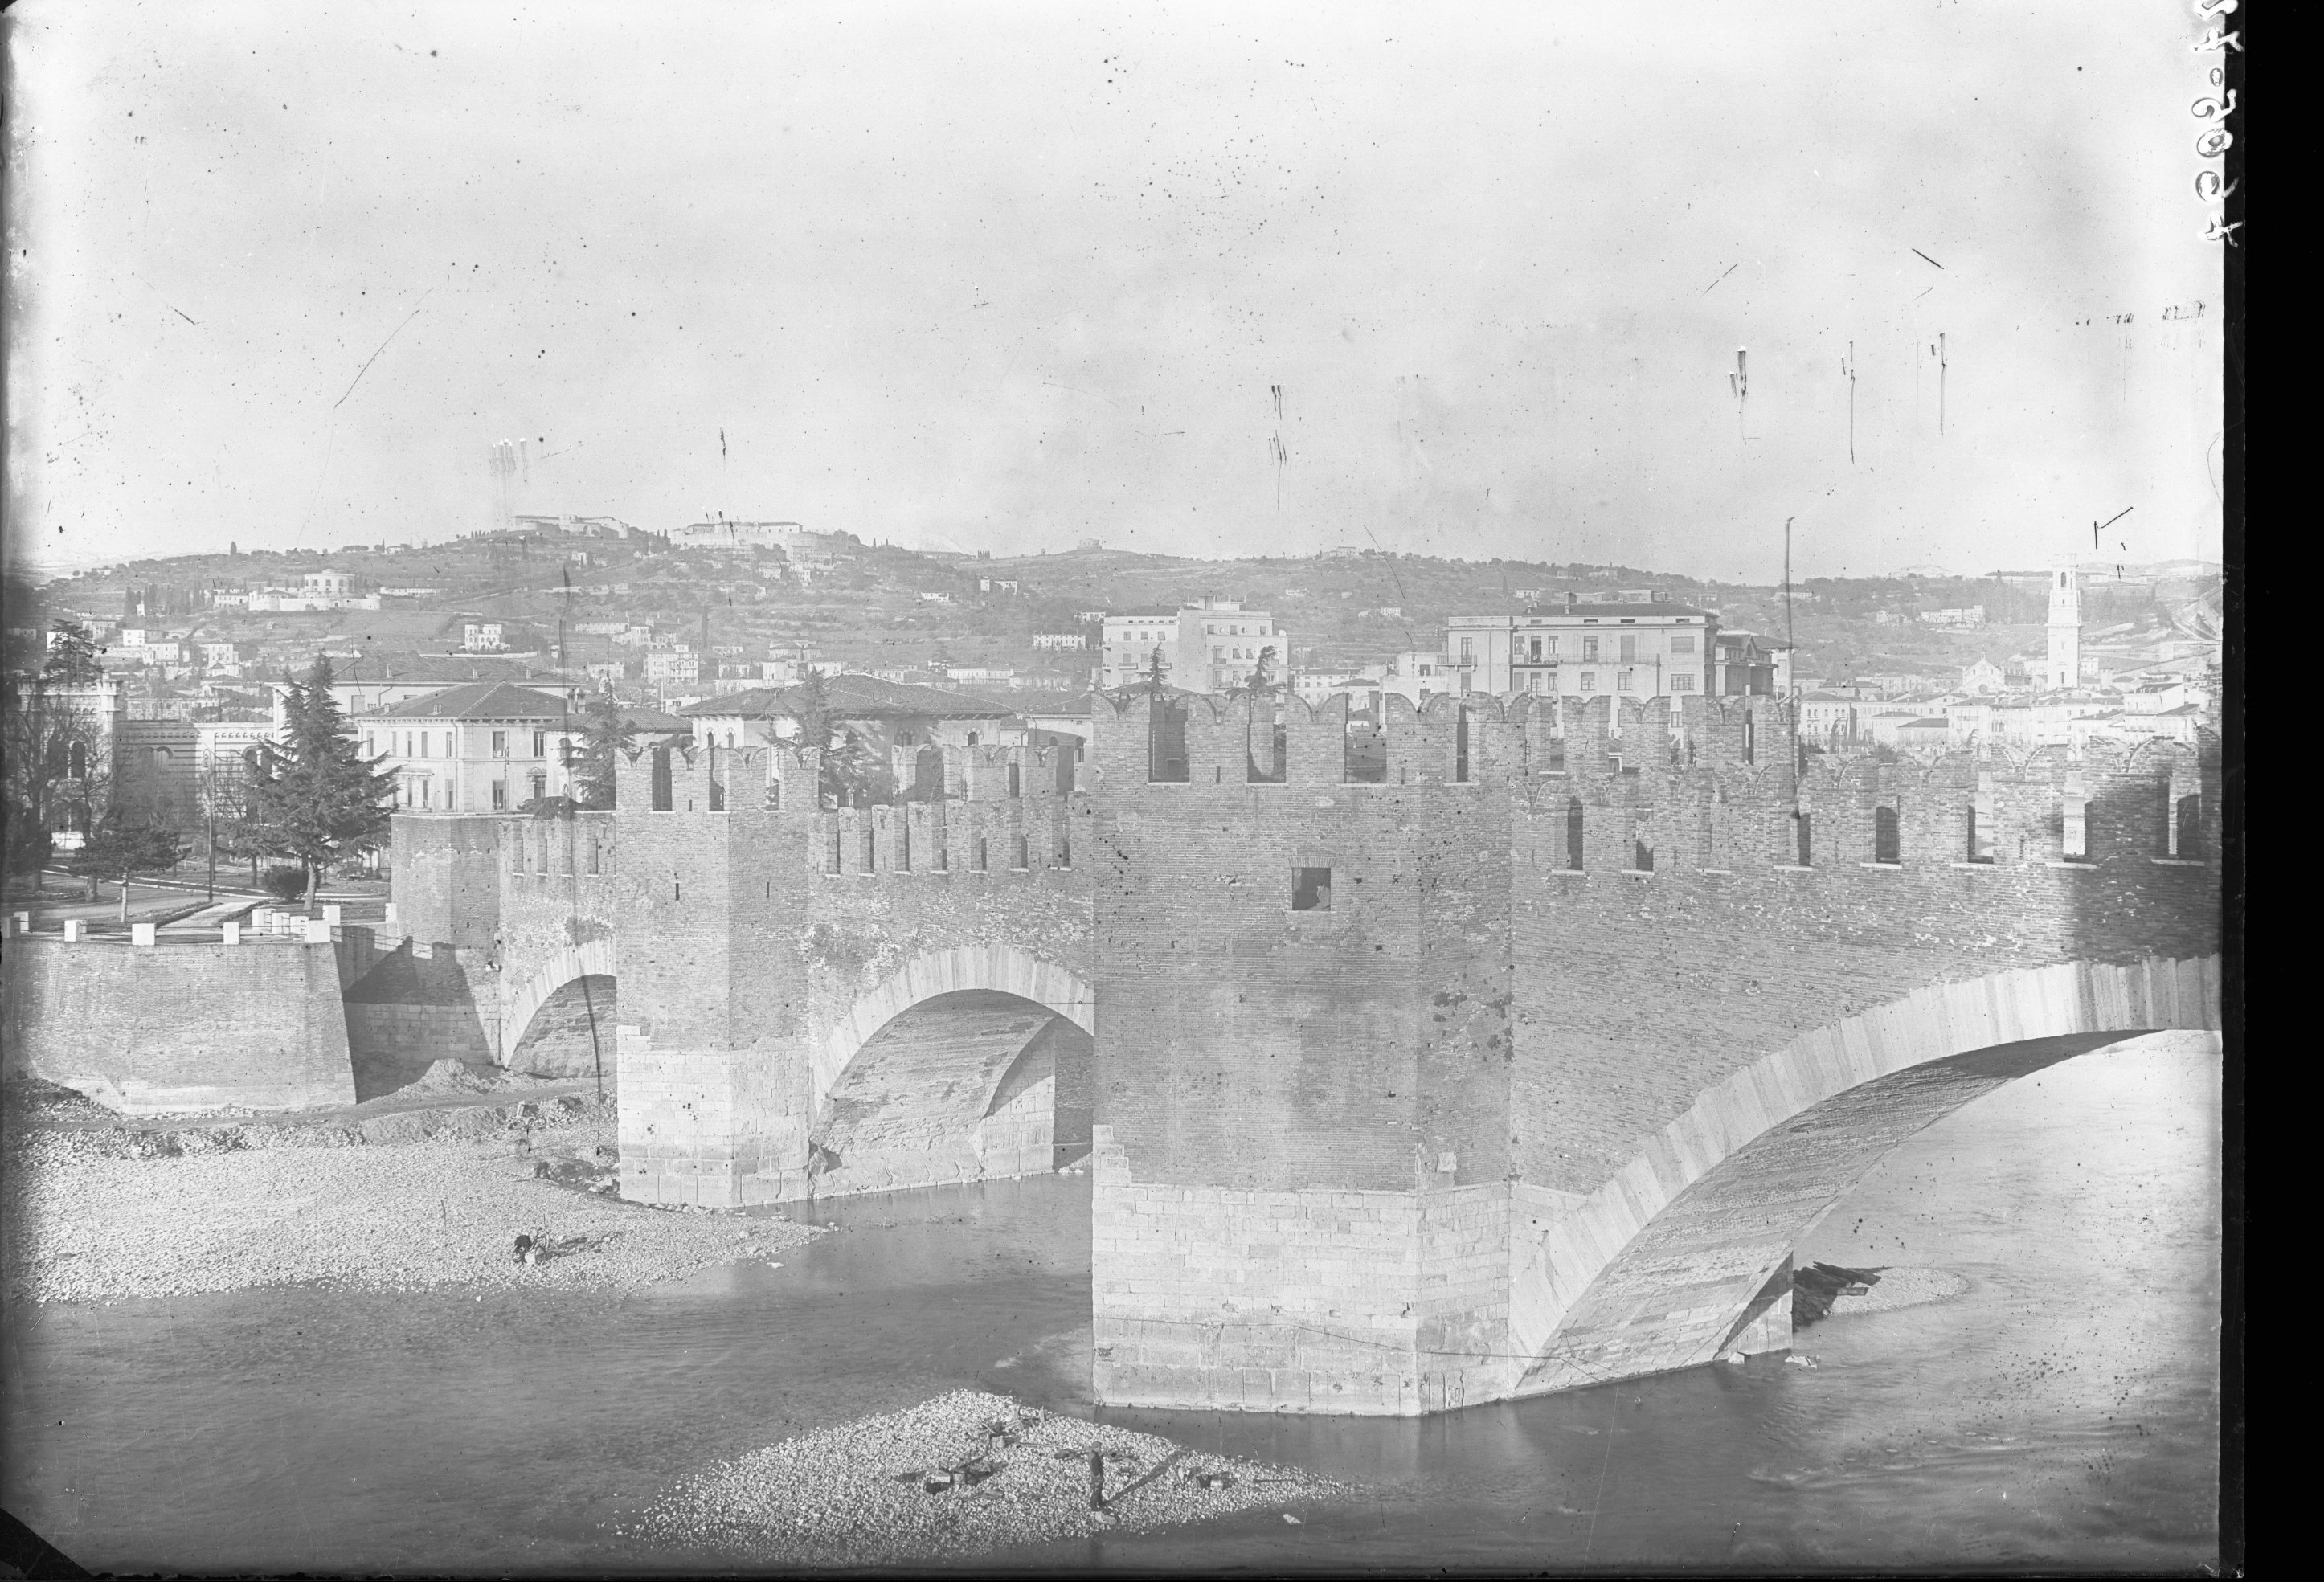 ponti - ponte di Castelvecchio <Verona> (negativo) di Soprintendenza ai monumenti prov. VR MN CR (attribuito) (metà XX)